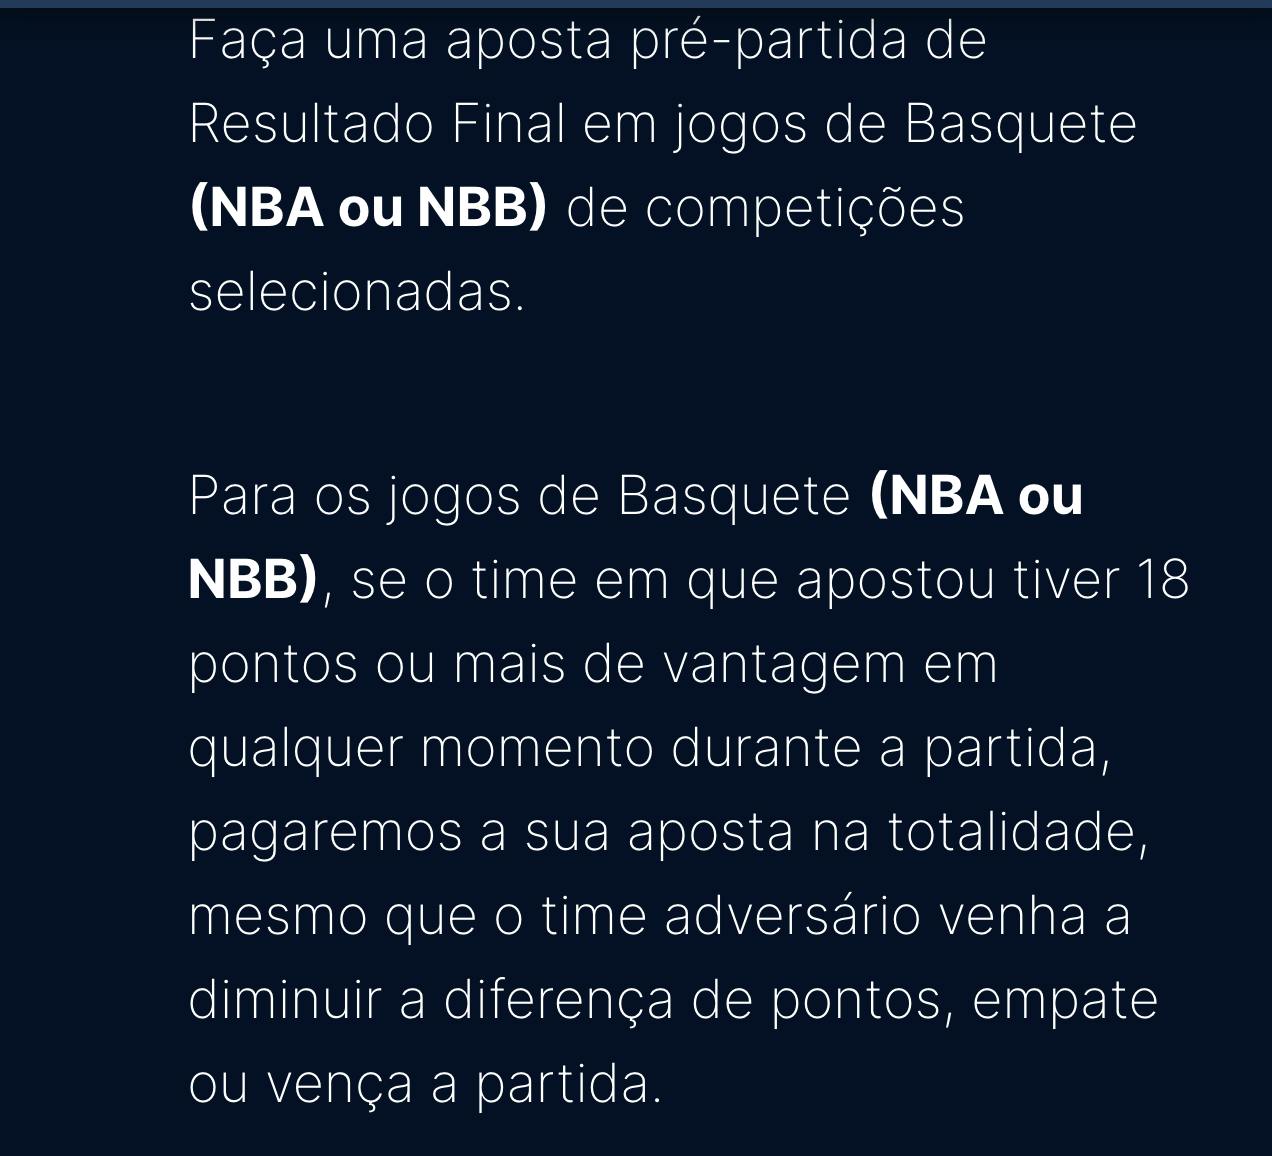 Condições do Pagamento antecipado Estrela Bet em jogos de basquete na NBA e NBB 